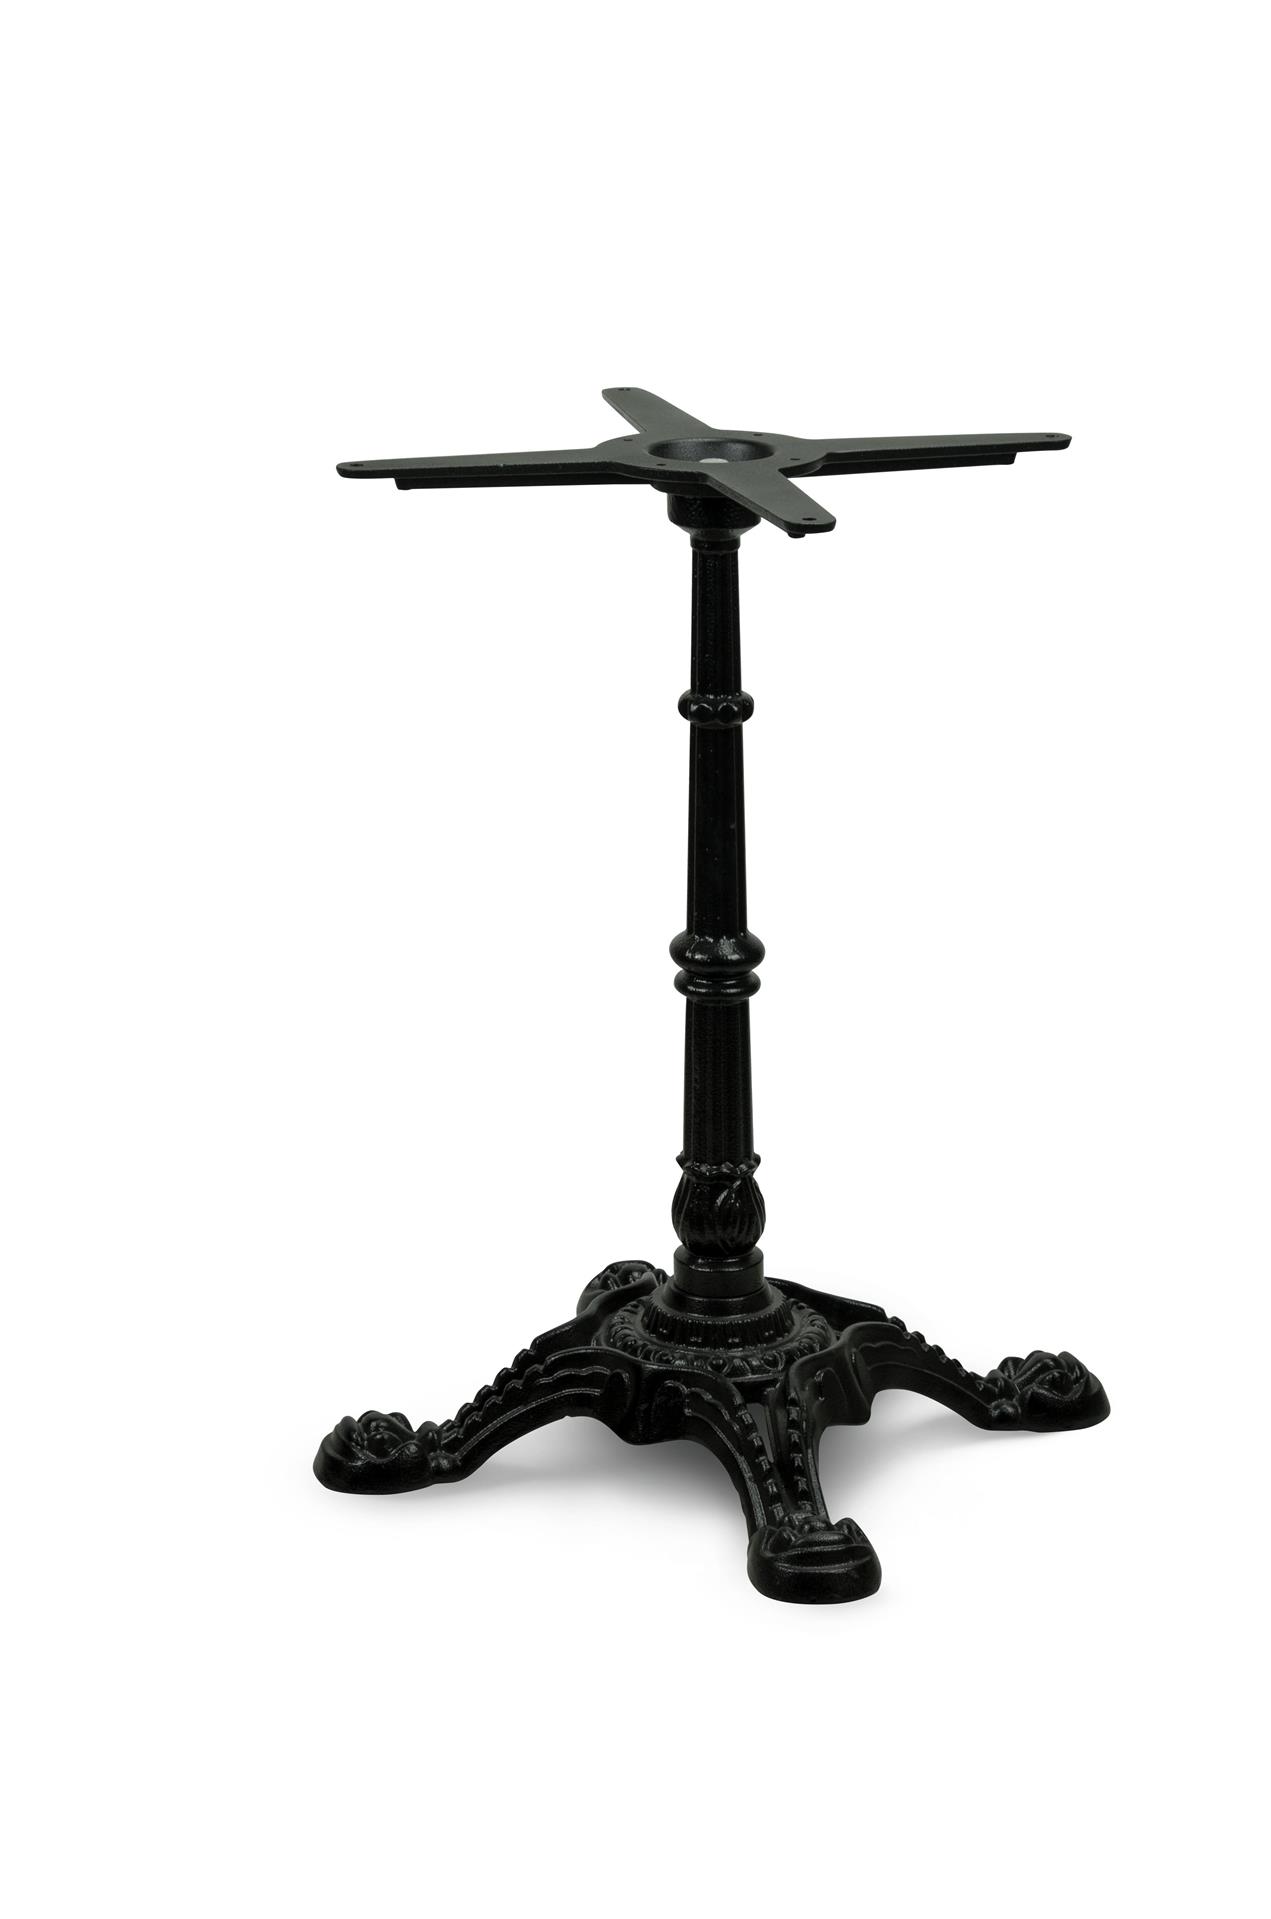 Tischbein PJ7018, Gusseisen, schwarz, vierzehig, antikes Design